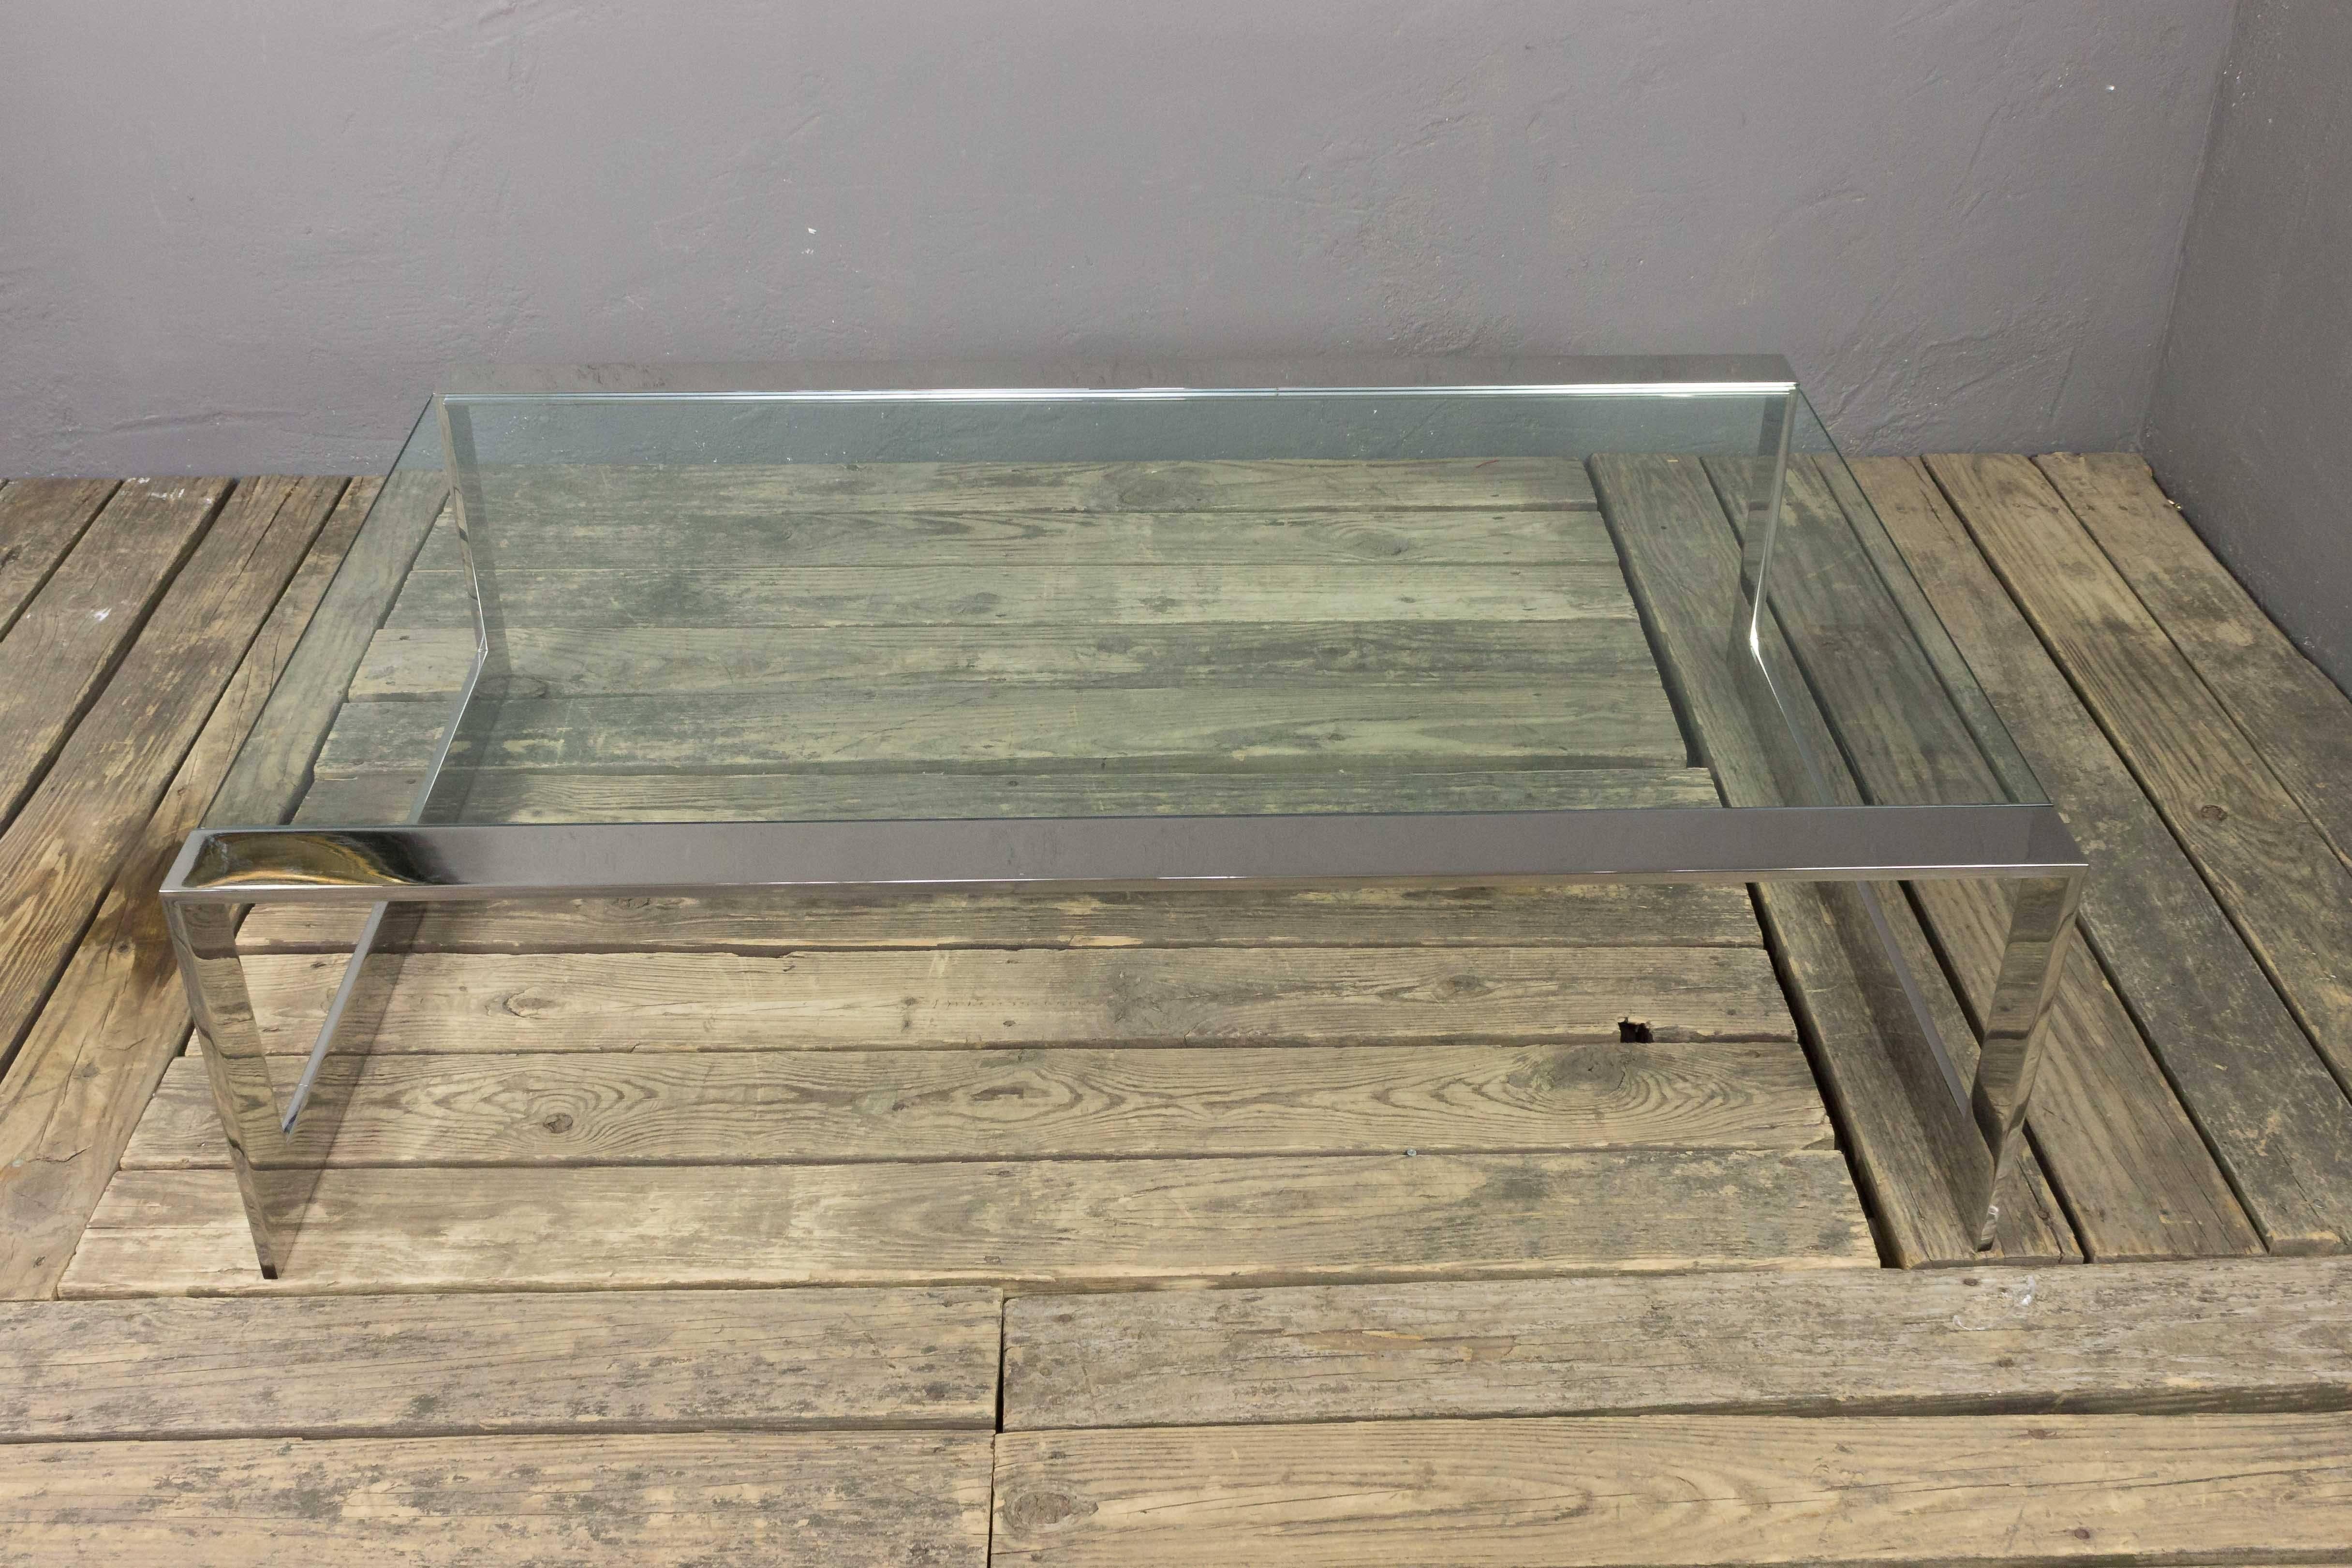 Cette table basse en acier inoxydable poli est dotée d'un plateau en verre transparent encastré, ajoutant une touche élégante et contemporaine à tout espace de vie. En très bon état, le cadre a été récemment poli, ce qui lui donne un aspect propre